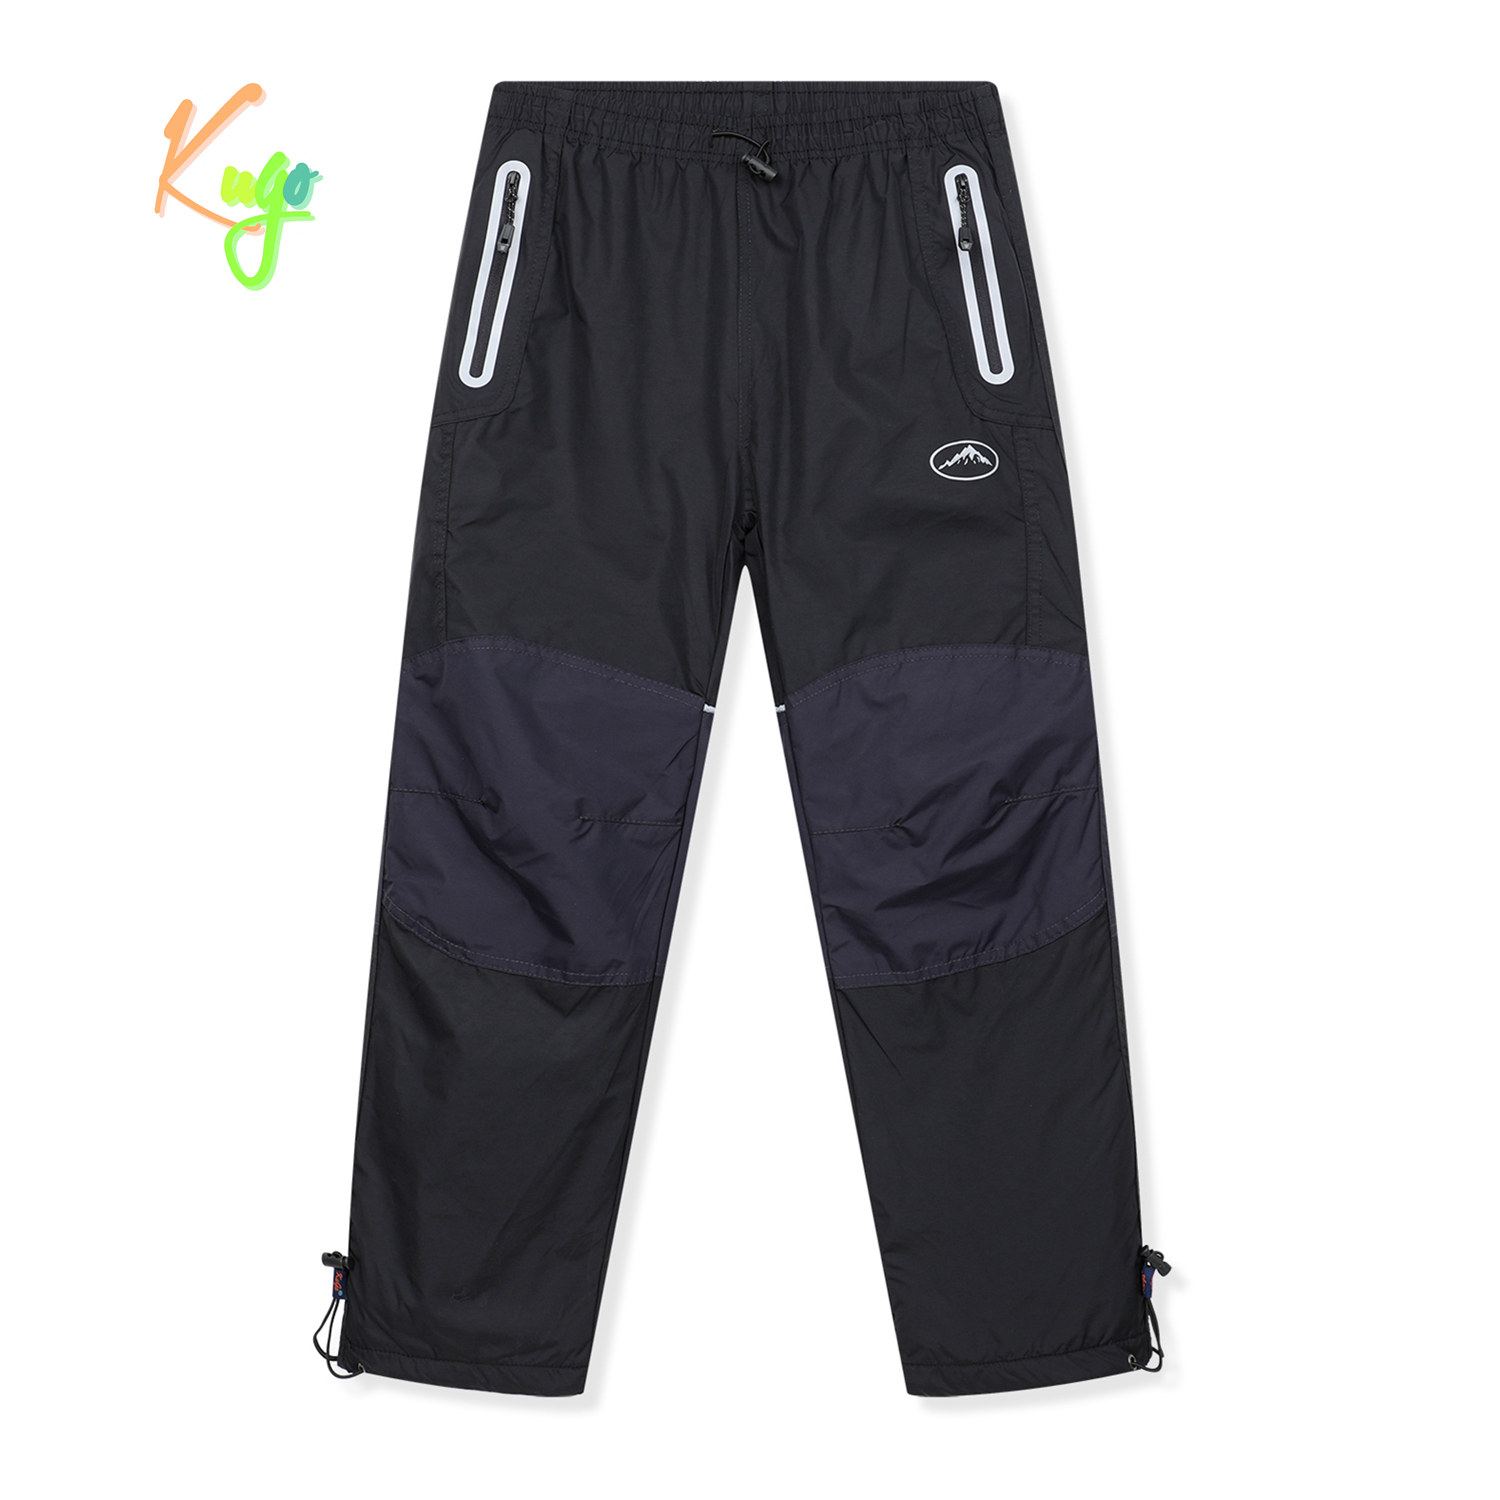 Chlapecké šusťákové kalhoty, zateplené - KUGO DK8237, černá / černé zipy Barva: Černá, Velikost: 158